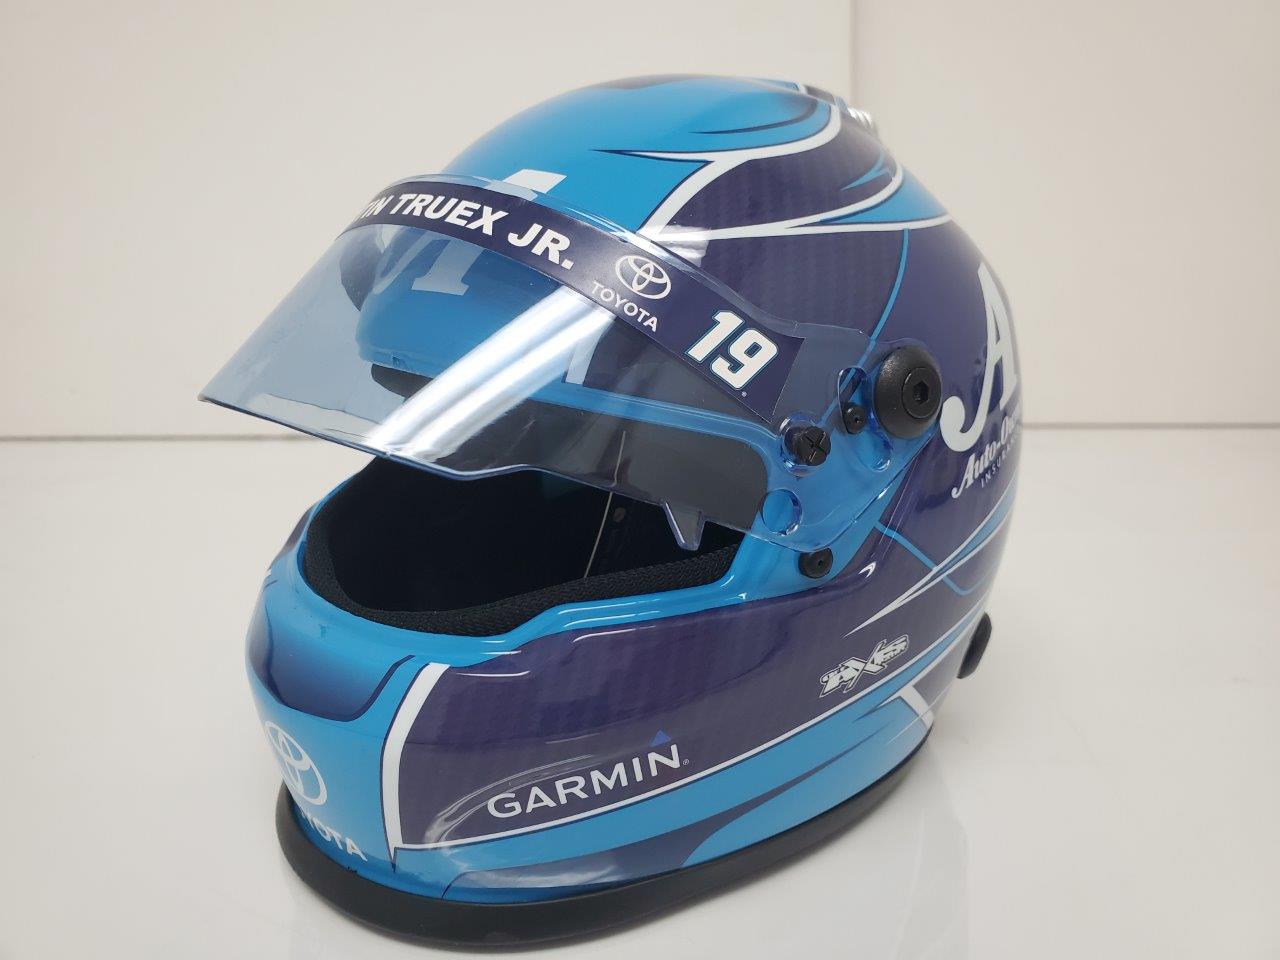 2019 Martin Truex Jr AutoOwners Insurance ~ Replica Full Size Helmet PREORDER